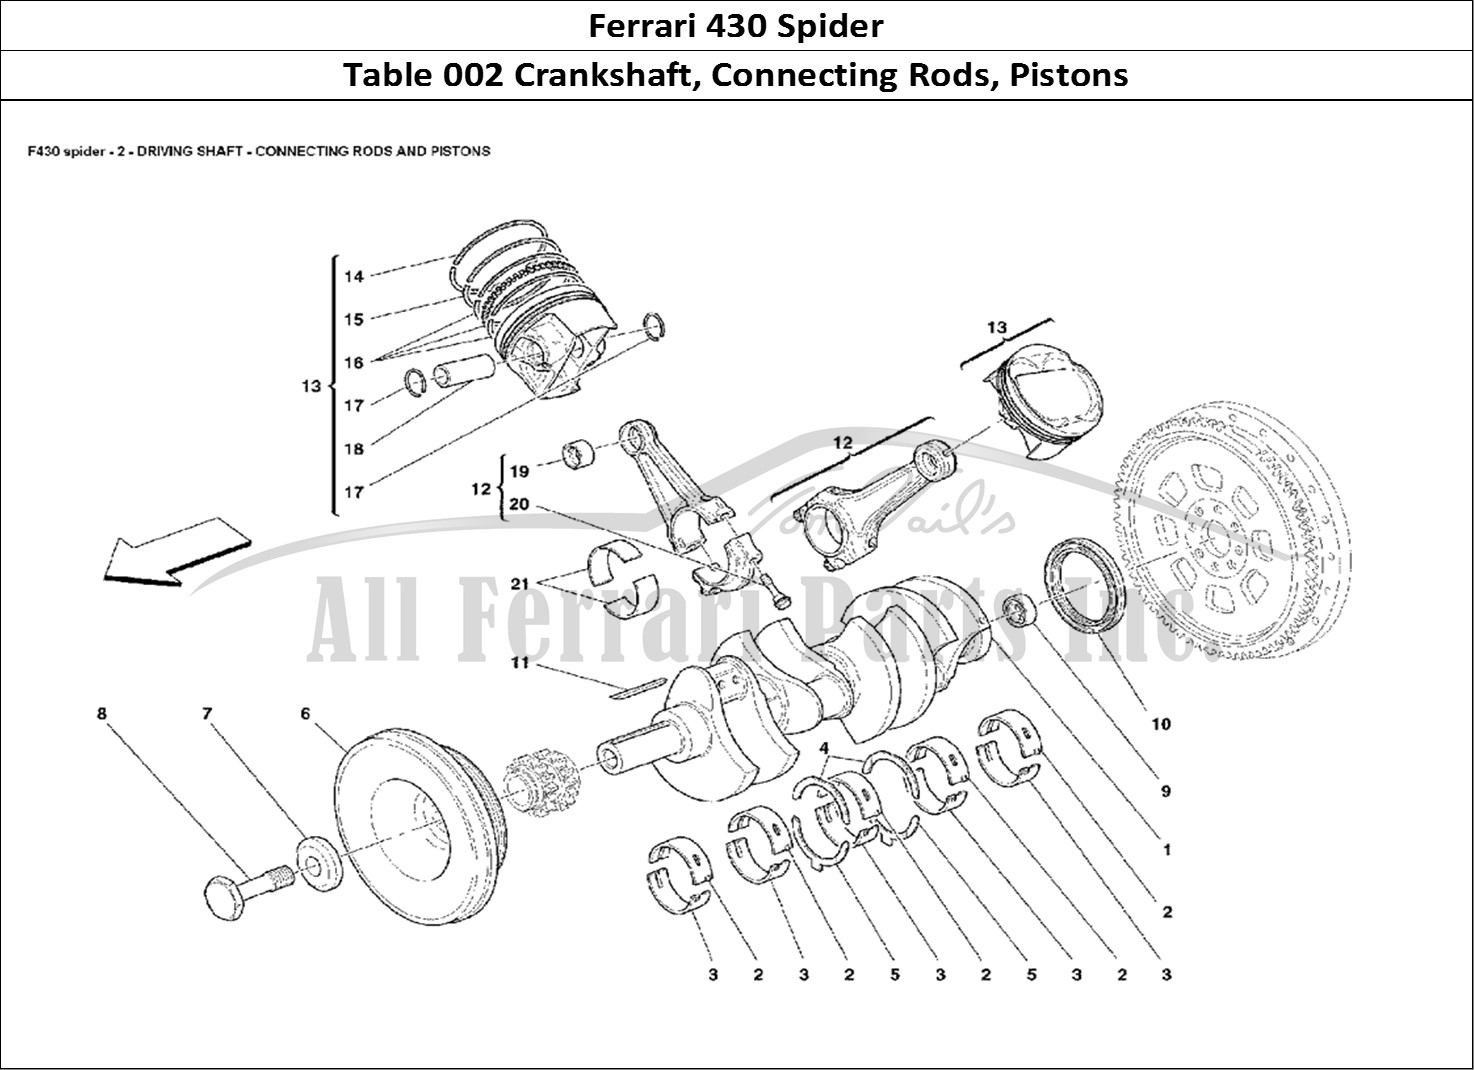 Ferrari Parts Ferrari 430 Spider Page 002 Crankshaft, Conrods And P